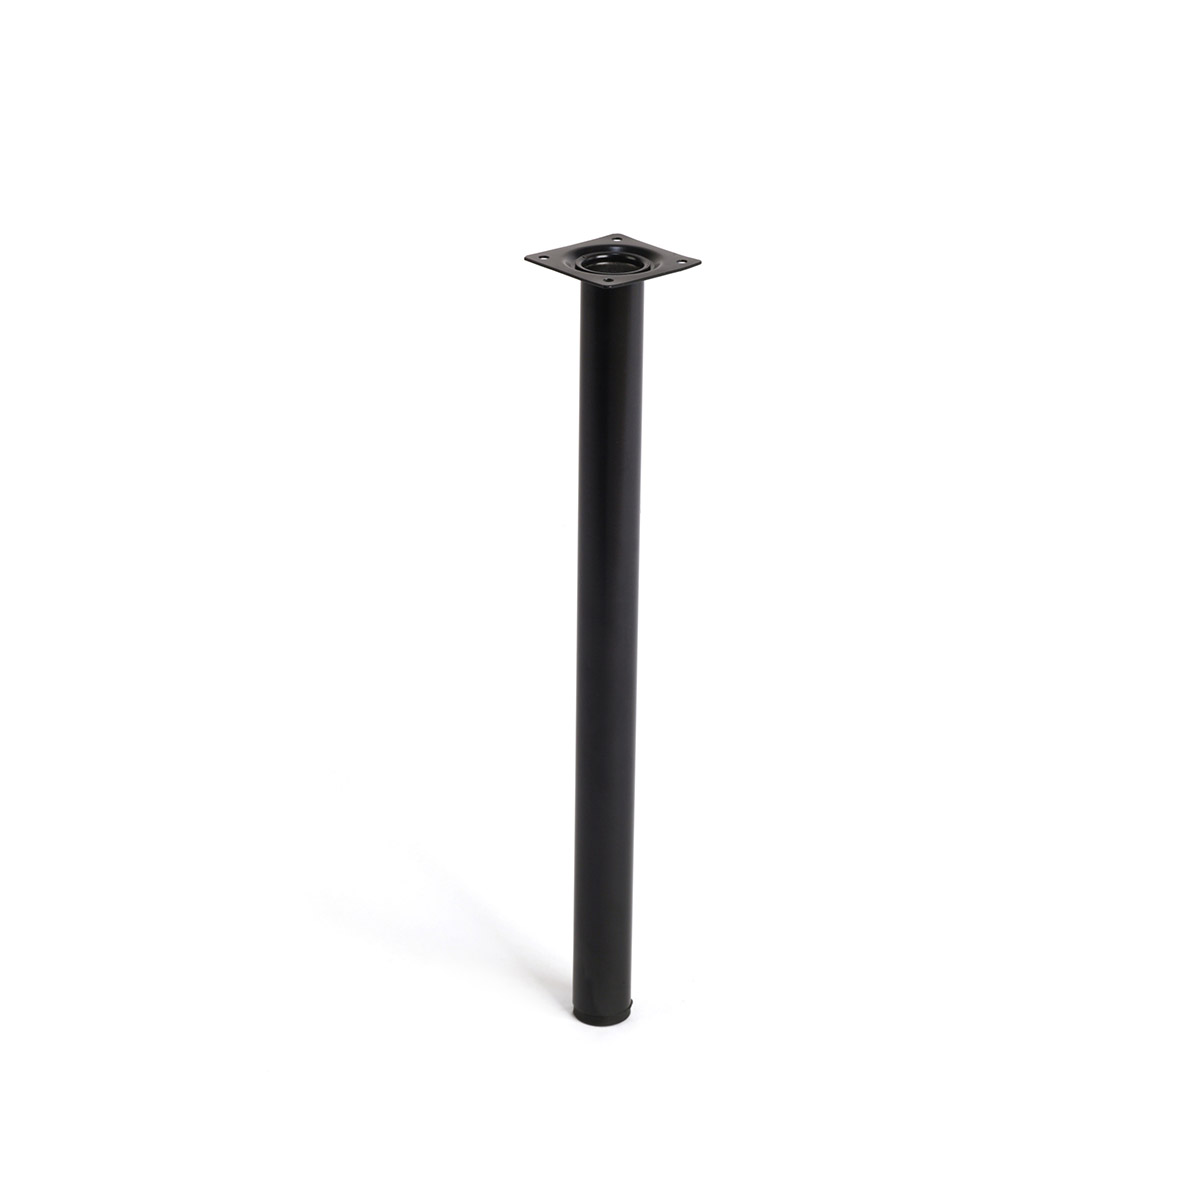 Pied cylindrique en acier d'une hauteur de 400 mm et finition noir. Dimensions: 30x30x400 mm